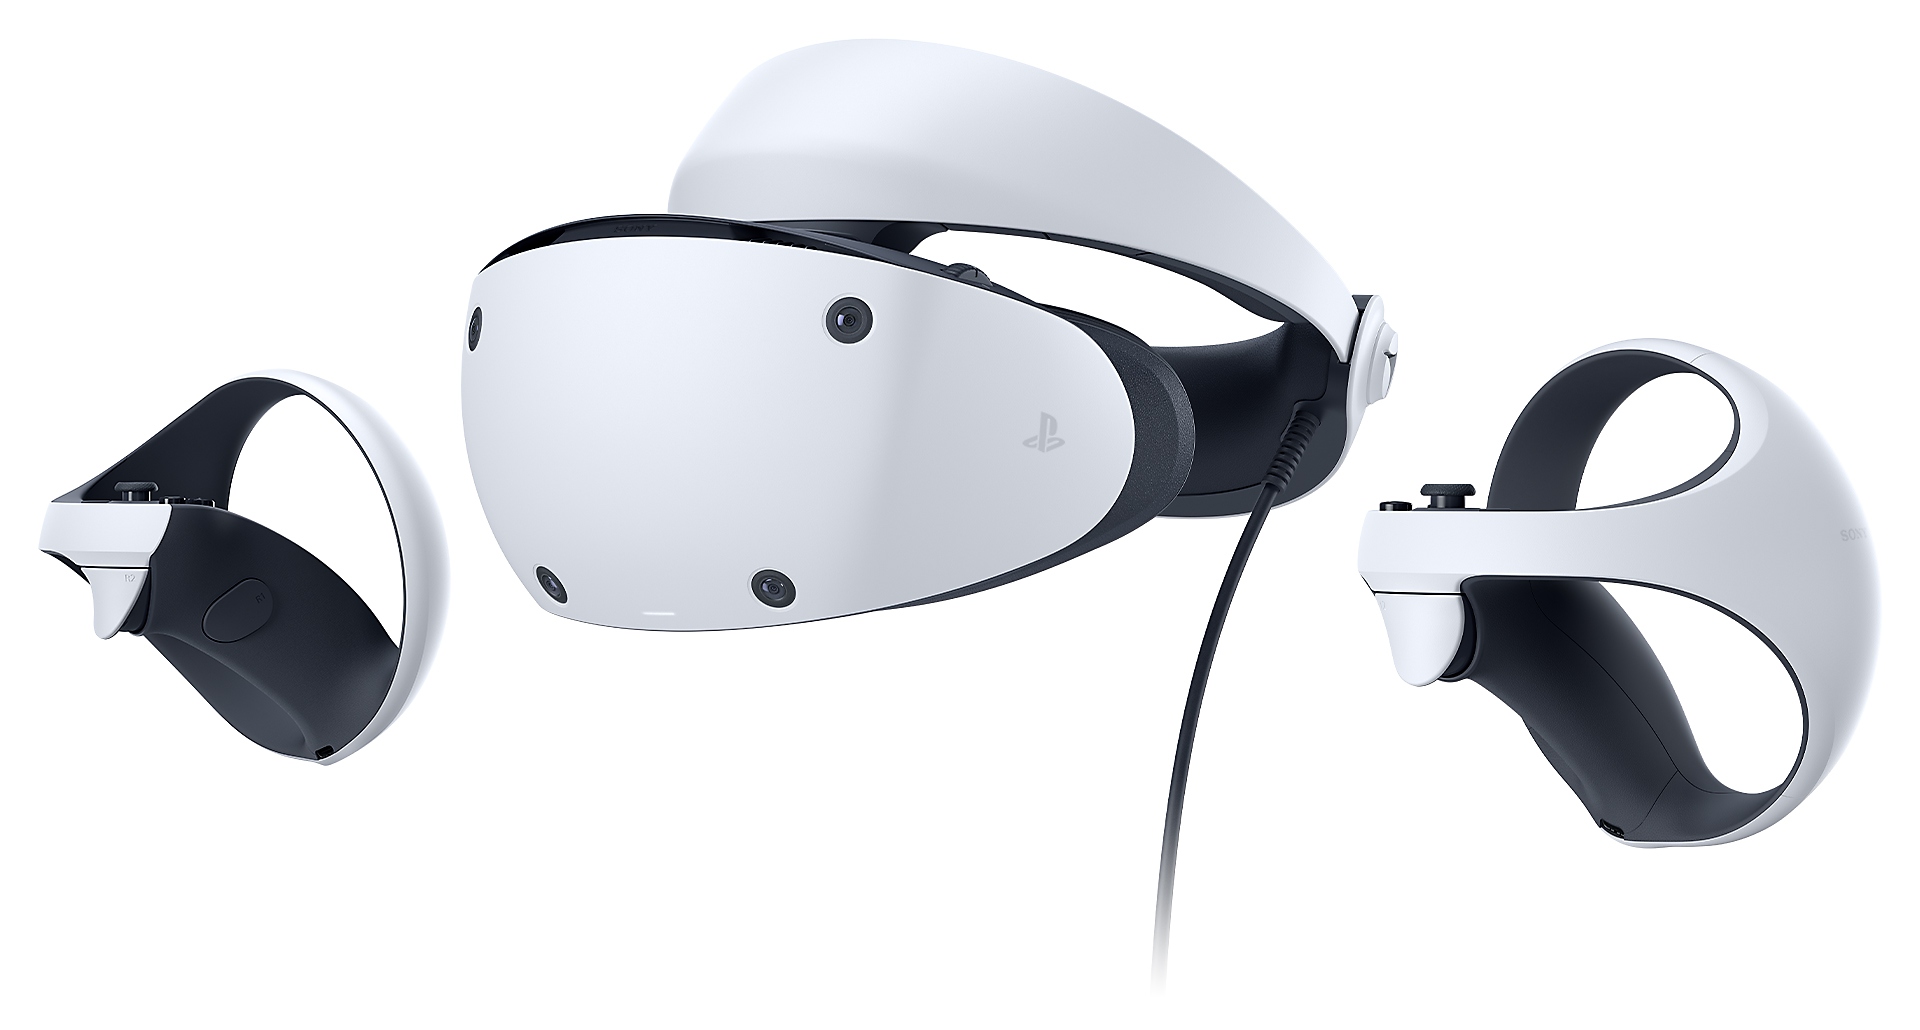 Visori VR: Sony promette 2 milioni di unità il giorno del lancio thumbnail